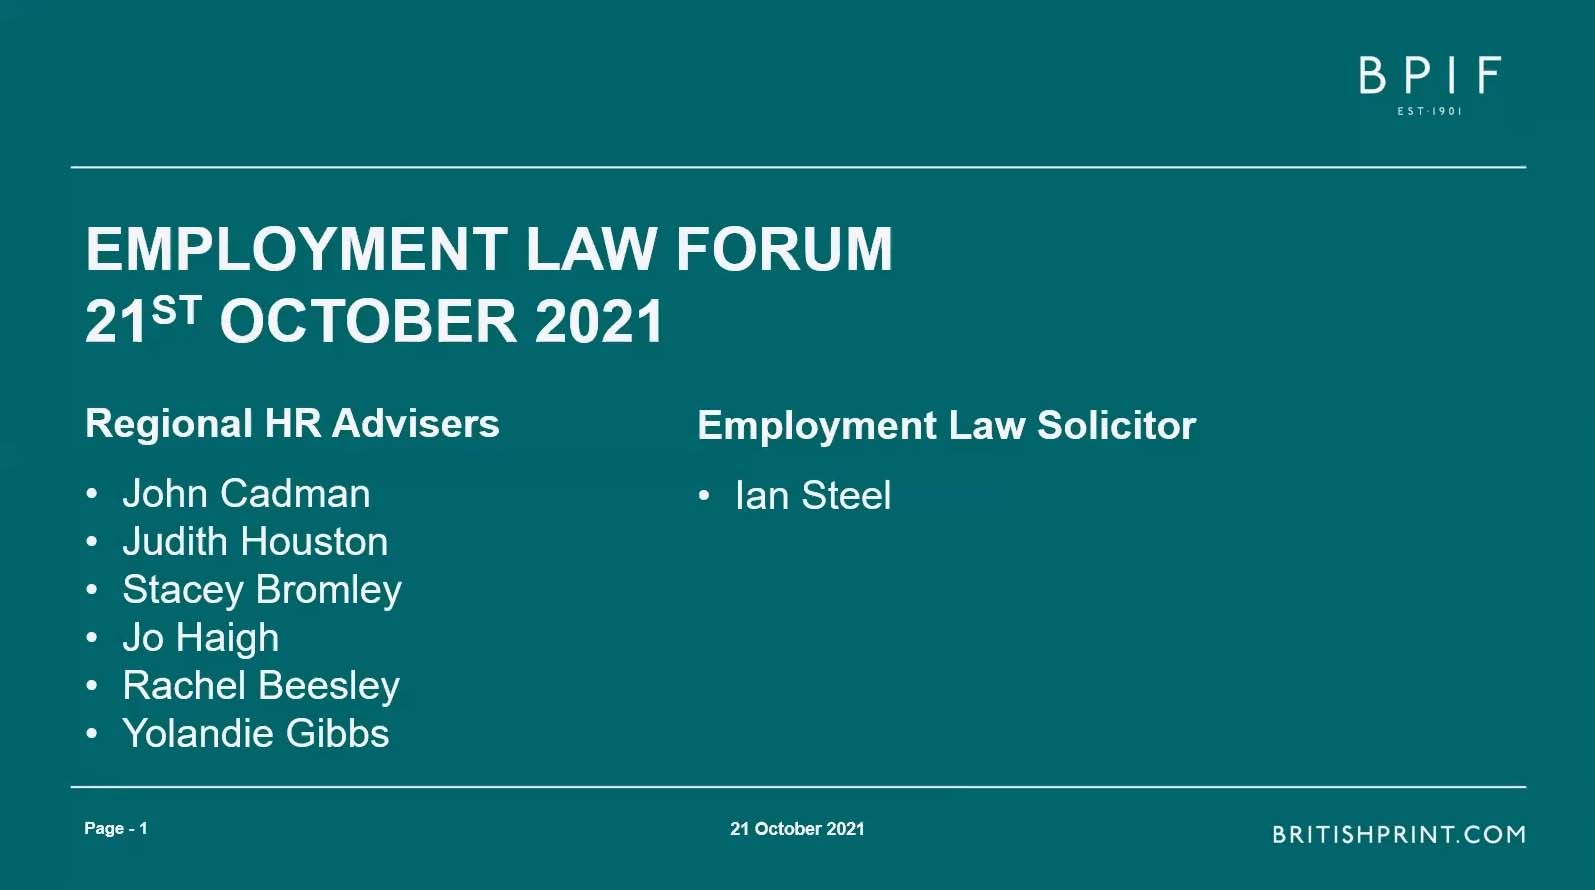 BPIF/BOSS HR Forum - Employment law